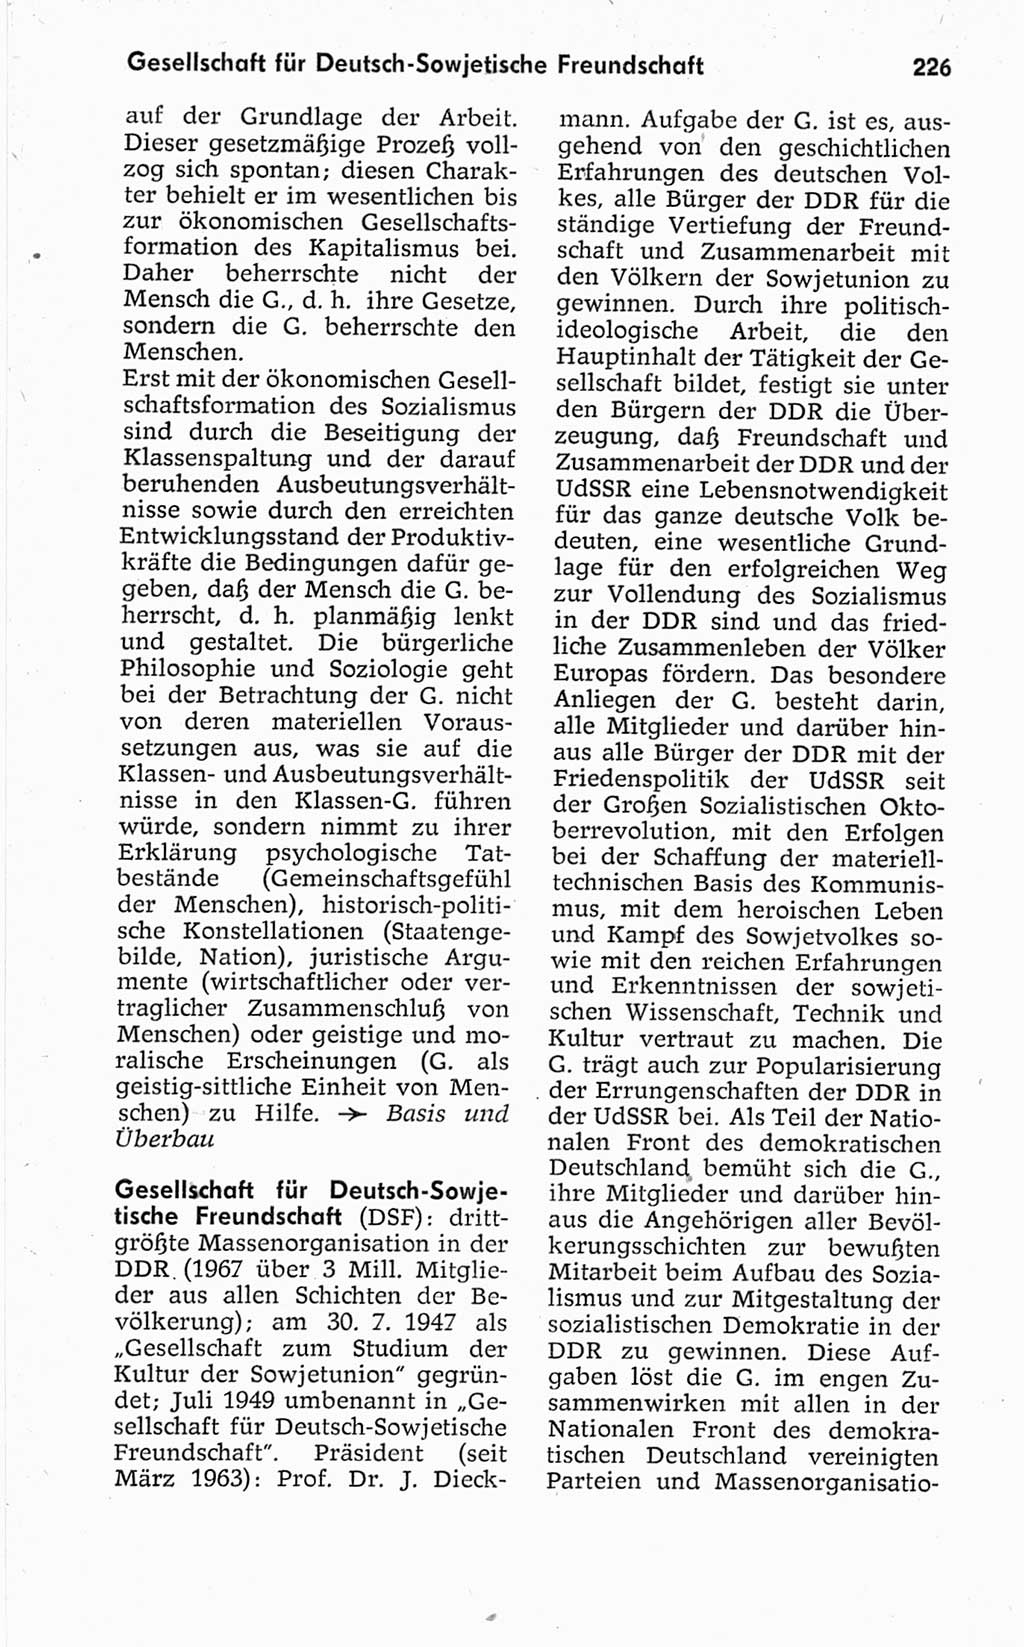 Kleines politisches Wörterbuch [Deutsche Demokratische Republik (DDR)] 1967, Seite 226 (Kl. pol. Wb. DDR 1967, S. 226)